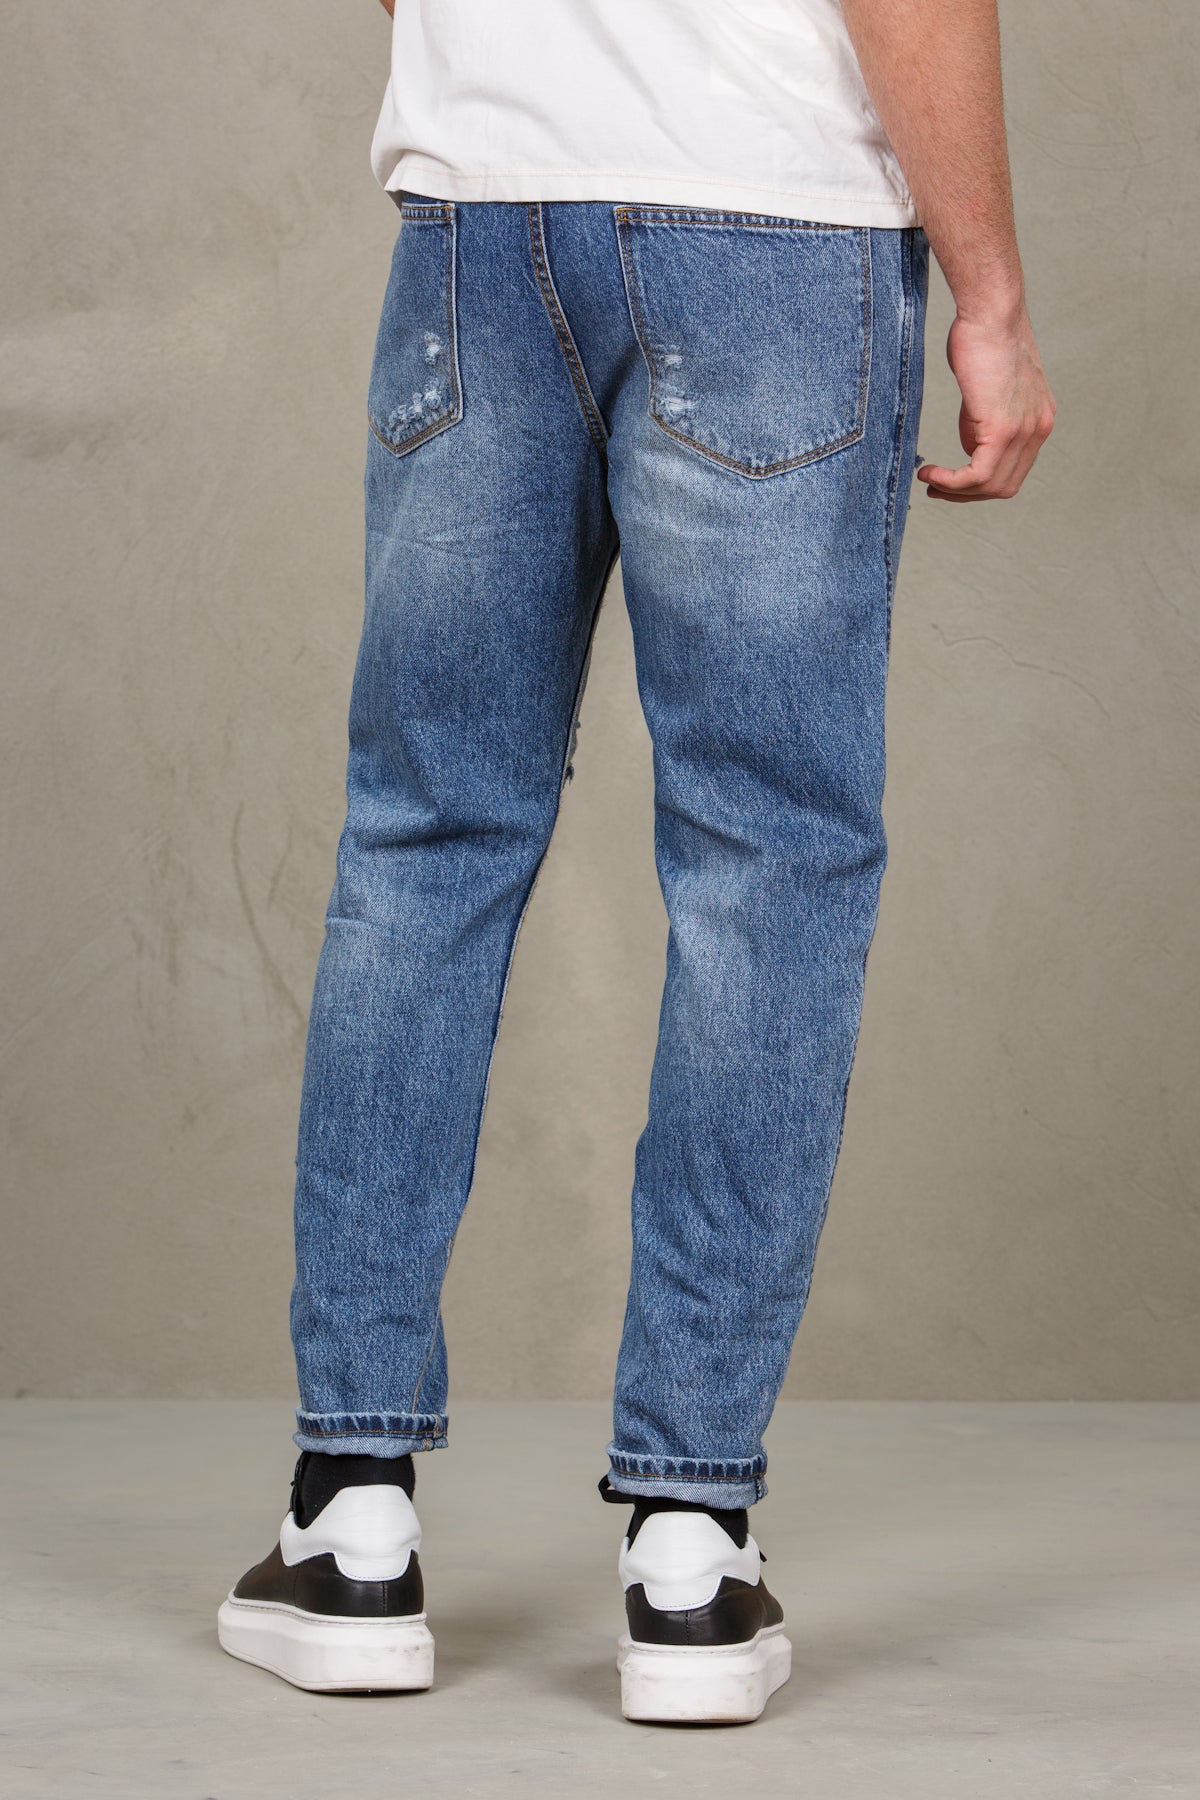 Pantalone jeans   con strappetti,  denim uomo  - 4